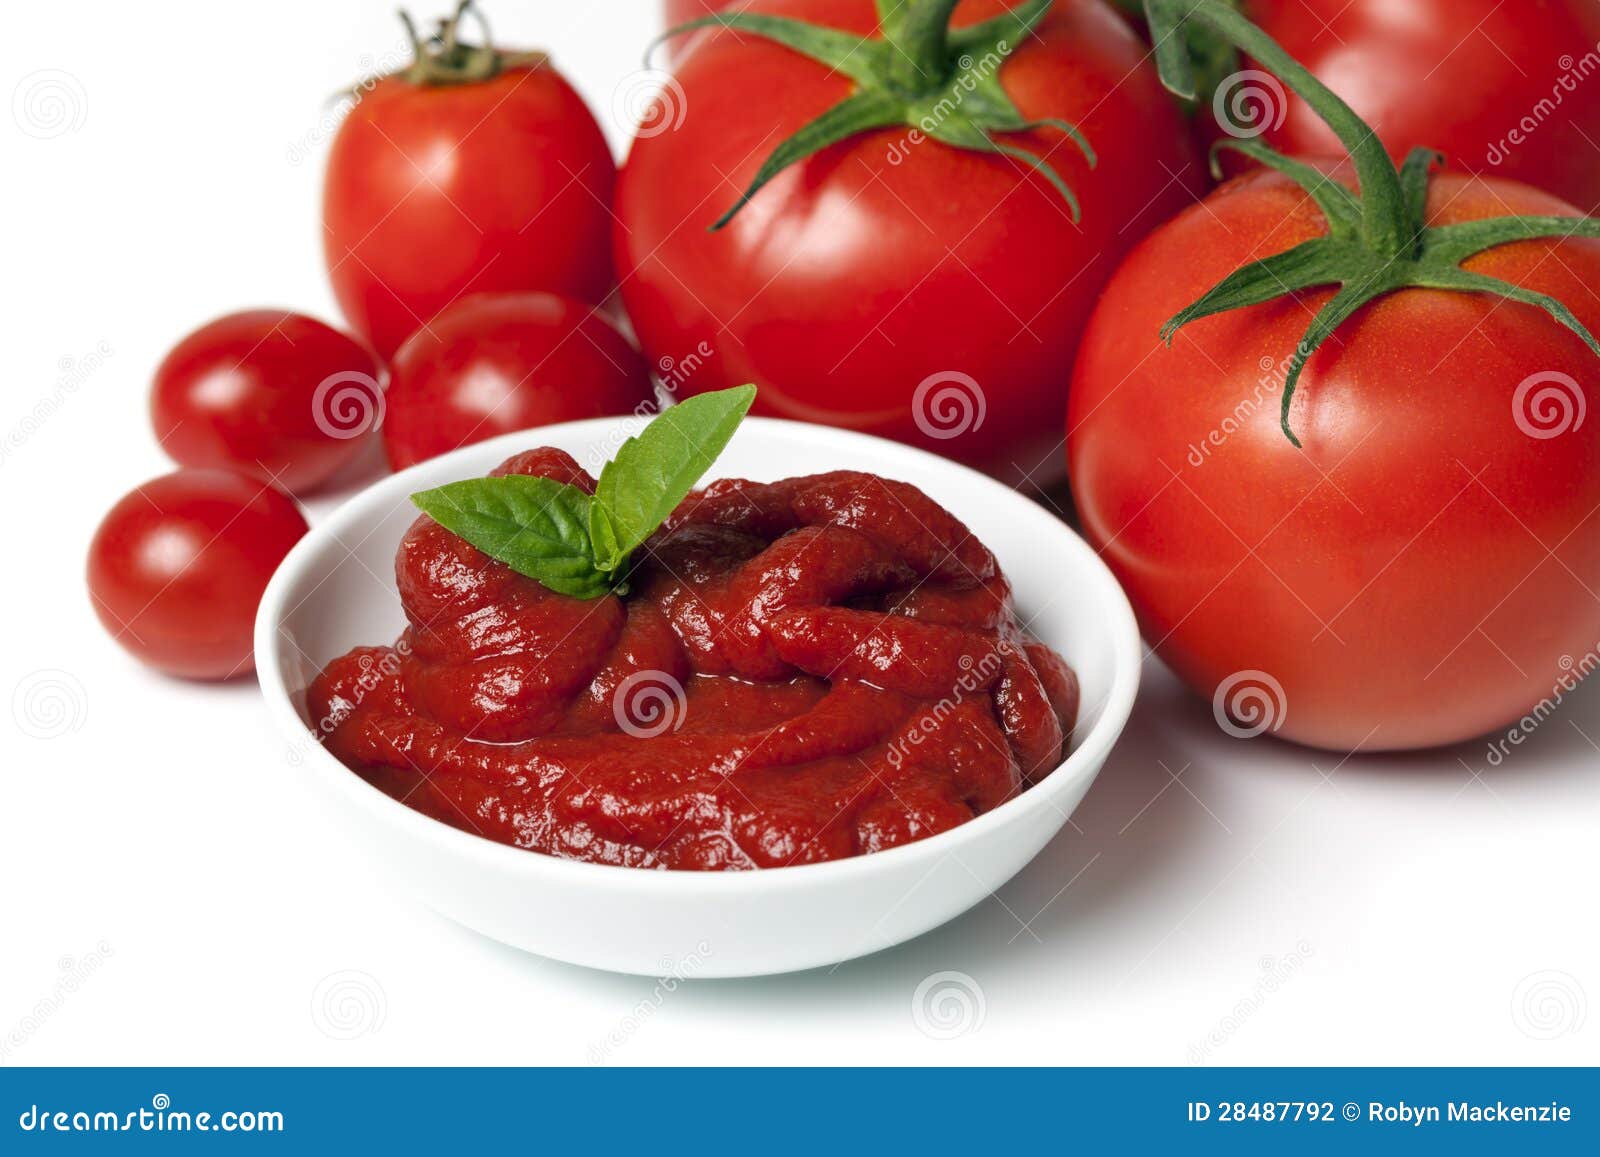 tomatoes and tomato puree